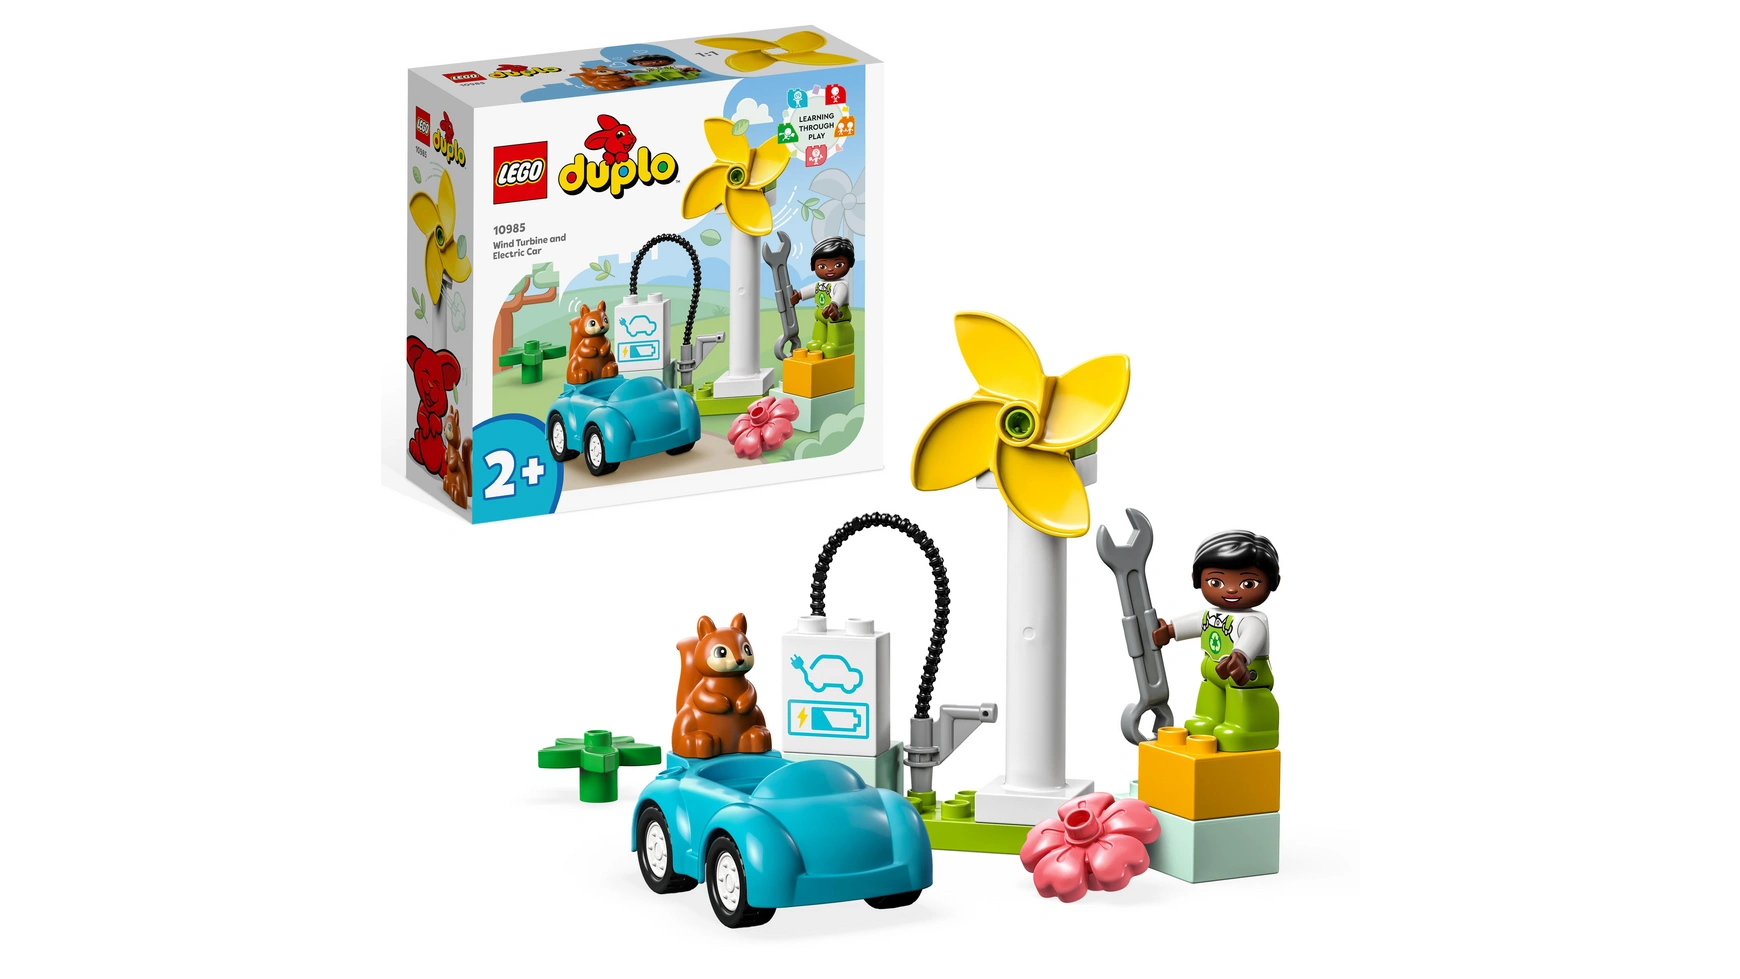 Lego DUPLO Town ветряная турбина и электромобиль, развивающая игрушка для детей от 2 лет и старше конструктор lego duplo town 10959 полицейский участок и вертолёт